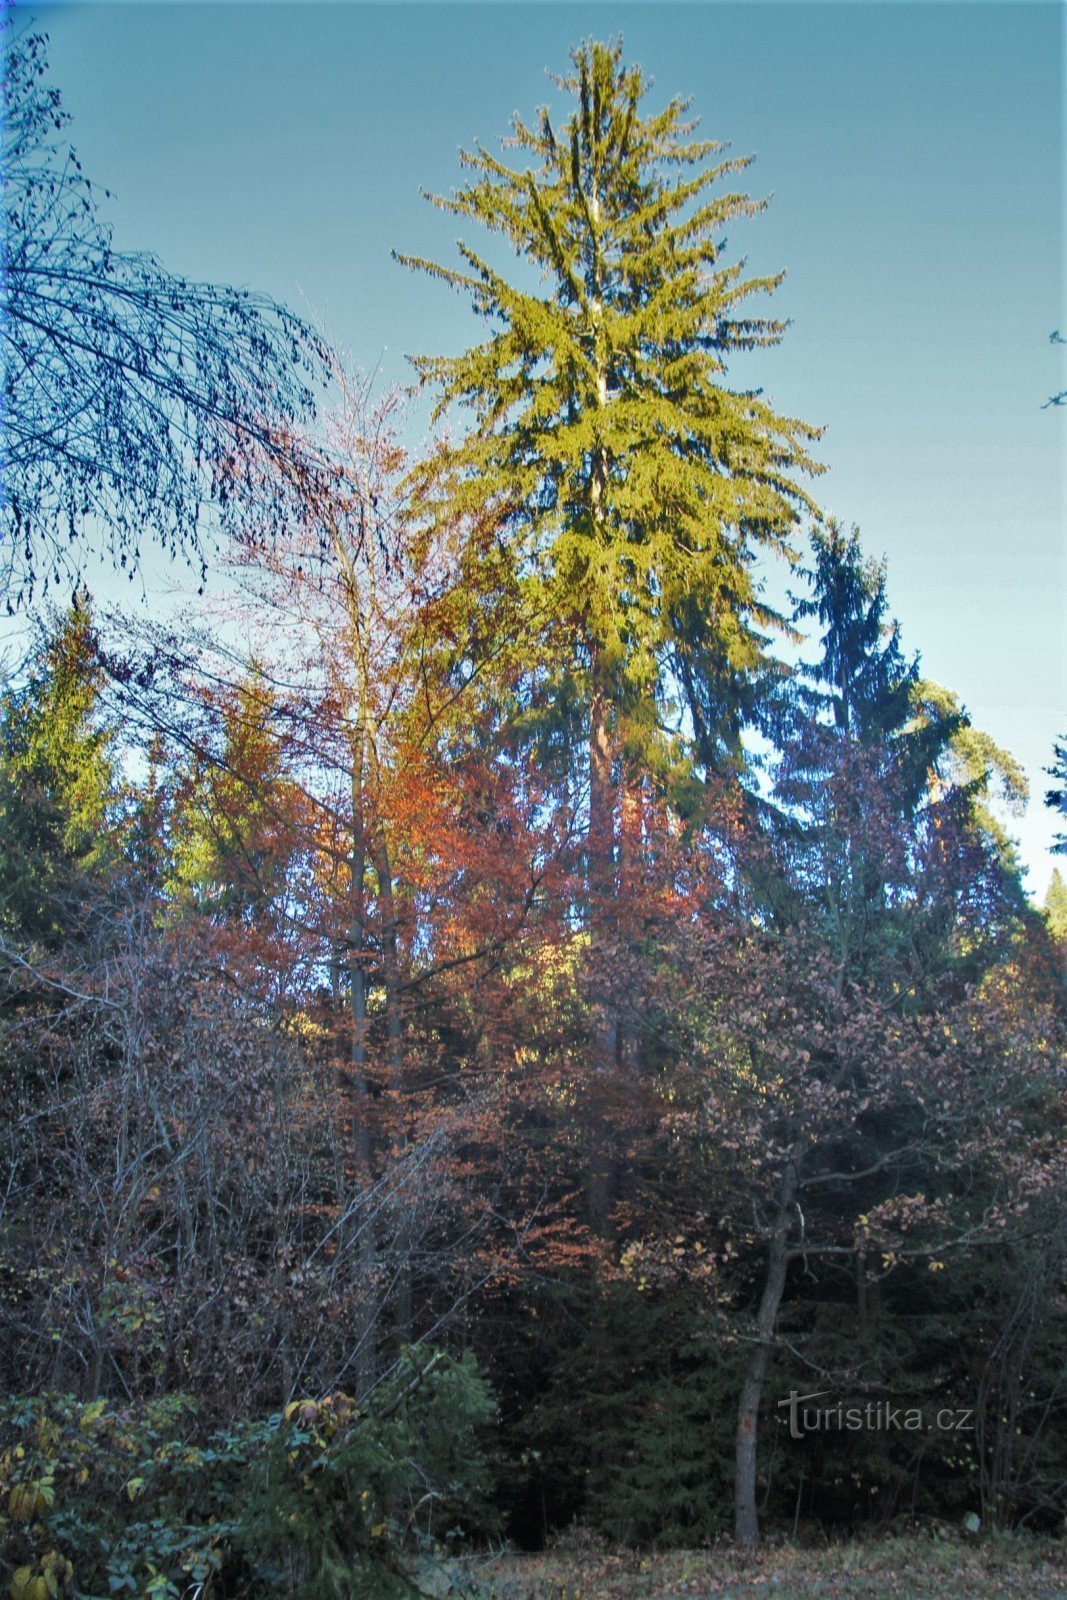 Les troncs d'épicéa dépassent les arbres environnants de plus de dix mètres